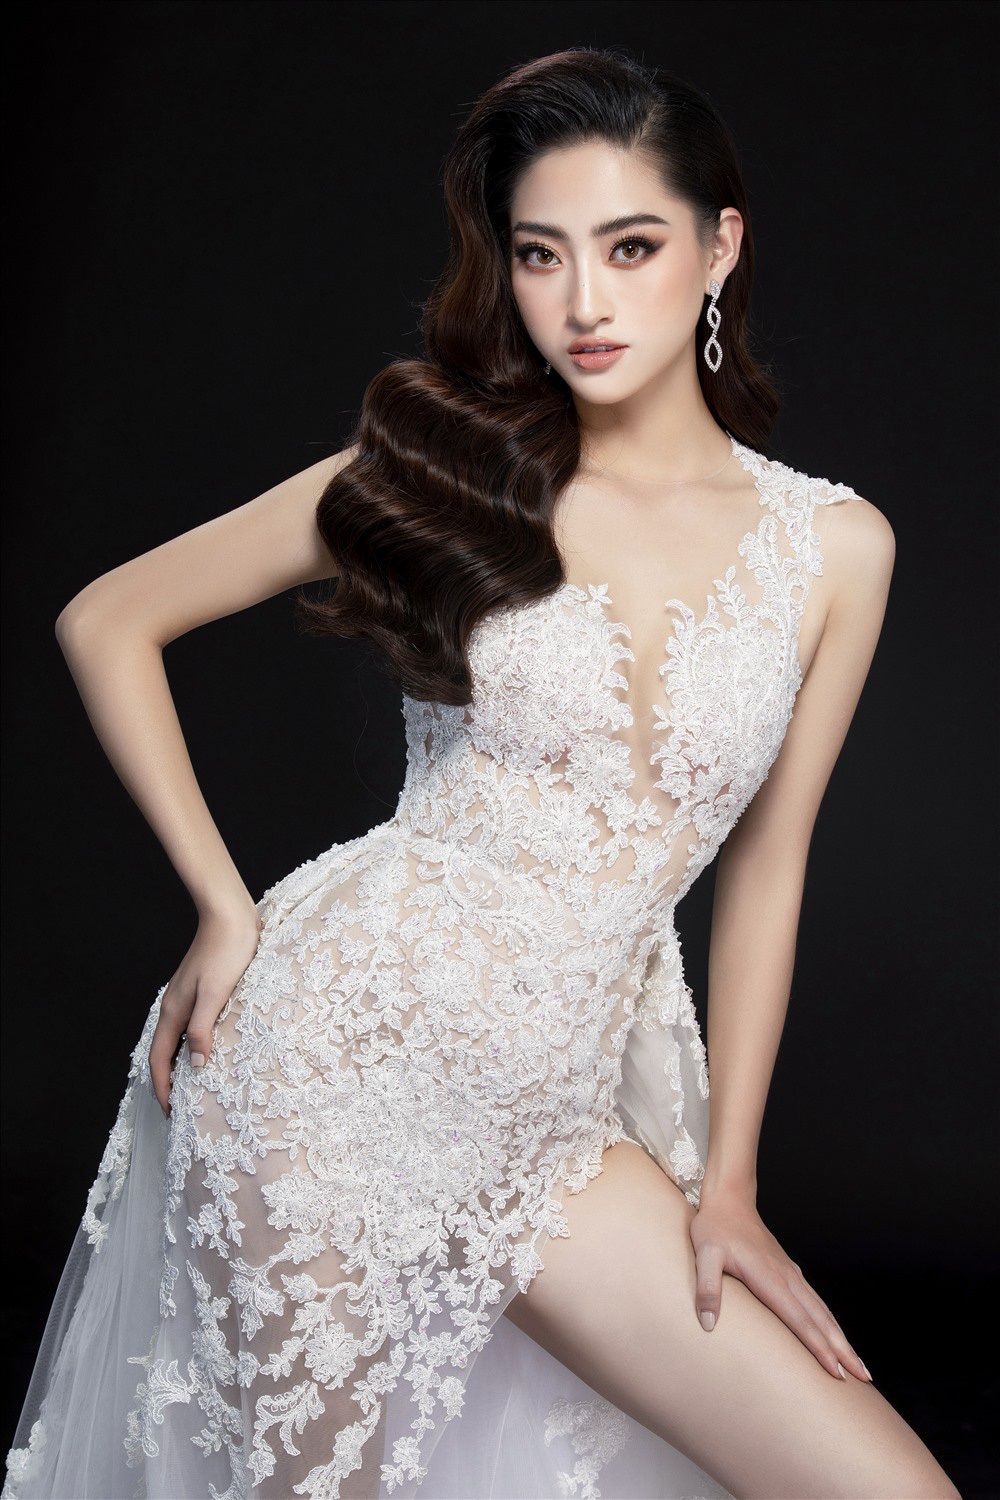 Hoa hậu Lương Thùy Linh: Số tiền lớn nhất tôi bỏ ra mua đồ chỉ là 1 triệu 8 cho một cái túi - Ảnh 4.